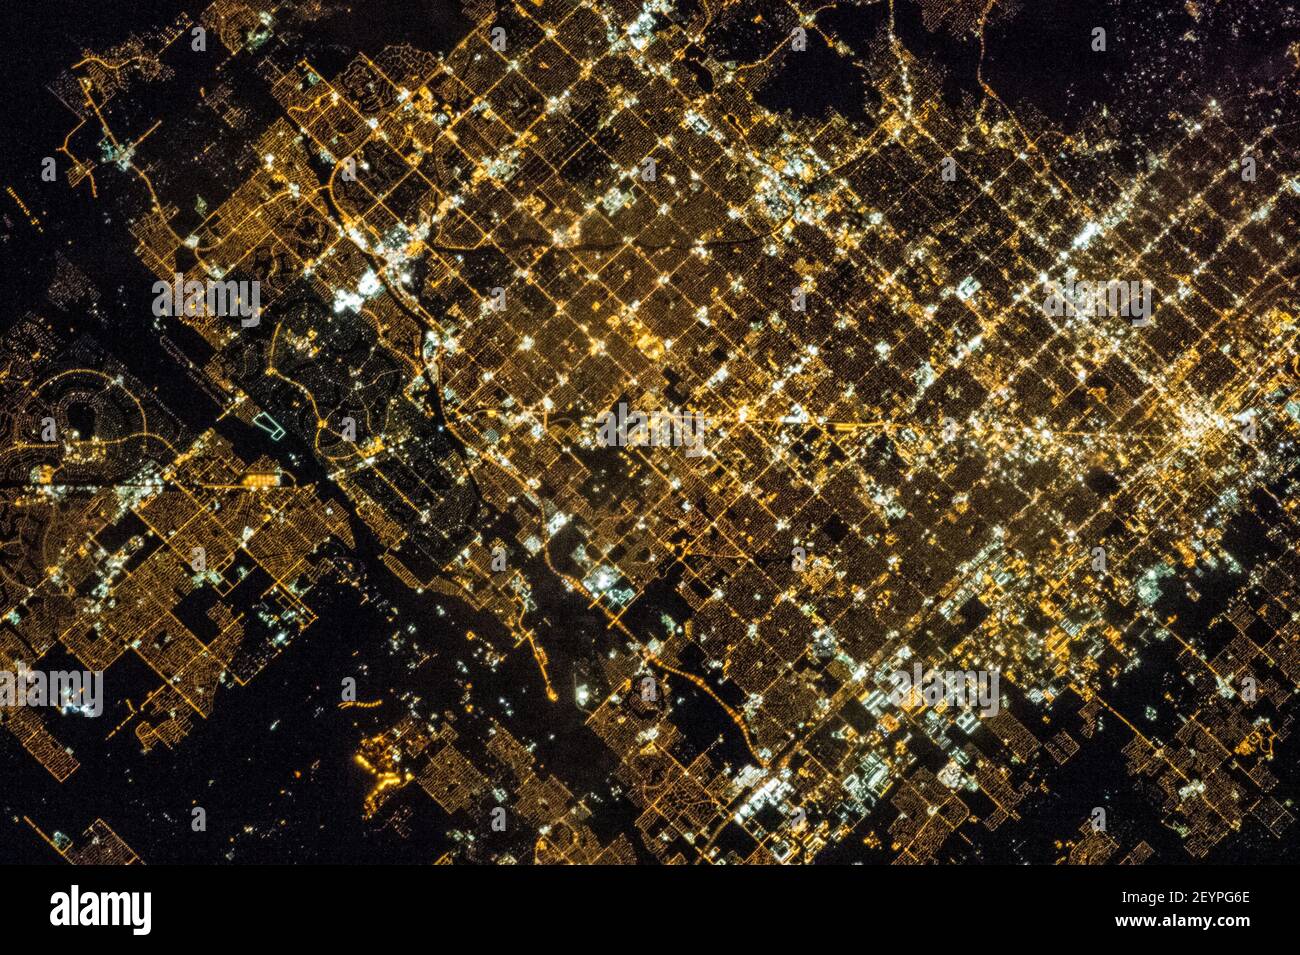 Uno de los miembros de la tripulación de la expedición 35 en la Estación Espacial Internacional utilizó una cámara fija con una lente de 400 milímetros para grabar esta imagen nocturna del área de Phoenix, Arizona el 16 de marzo de 2013. Como muchas grandes áreas urbanas del centro y oeste de los Estados Unidos, el área metropolitana de Phoenix se presenta a lo largo de una red regular de bloques de ciudad y calles. Mientras que es visible durante el día, esta rejilla es más evidente en la noche, cuando el patrón de la iluminación de la calle es claramente visible desde arriba -- en el caso de esta fotografía, desde el punto estratégico de la órbita terrestre baja de la Estación Espacial Internacional Foto de stock